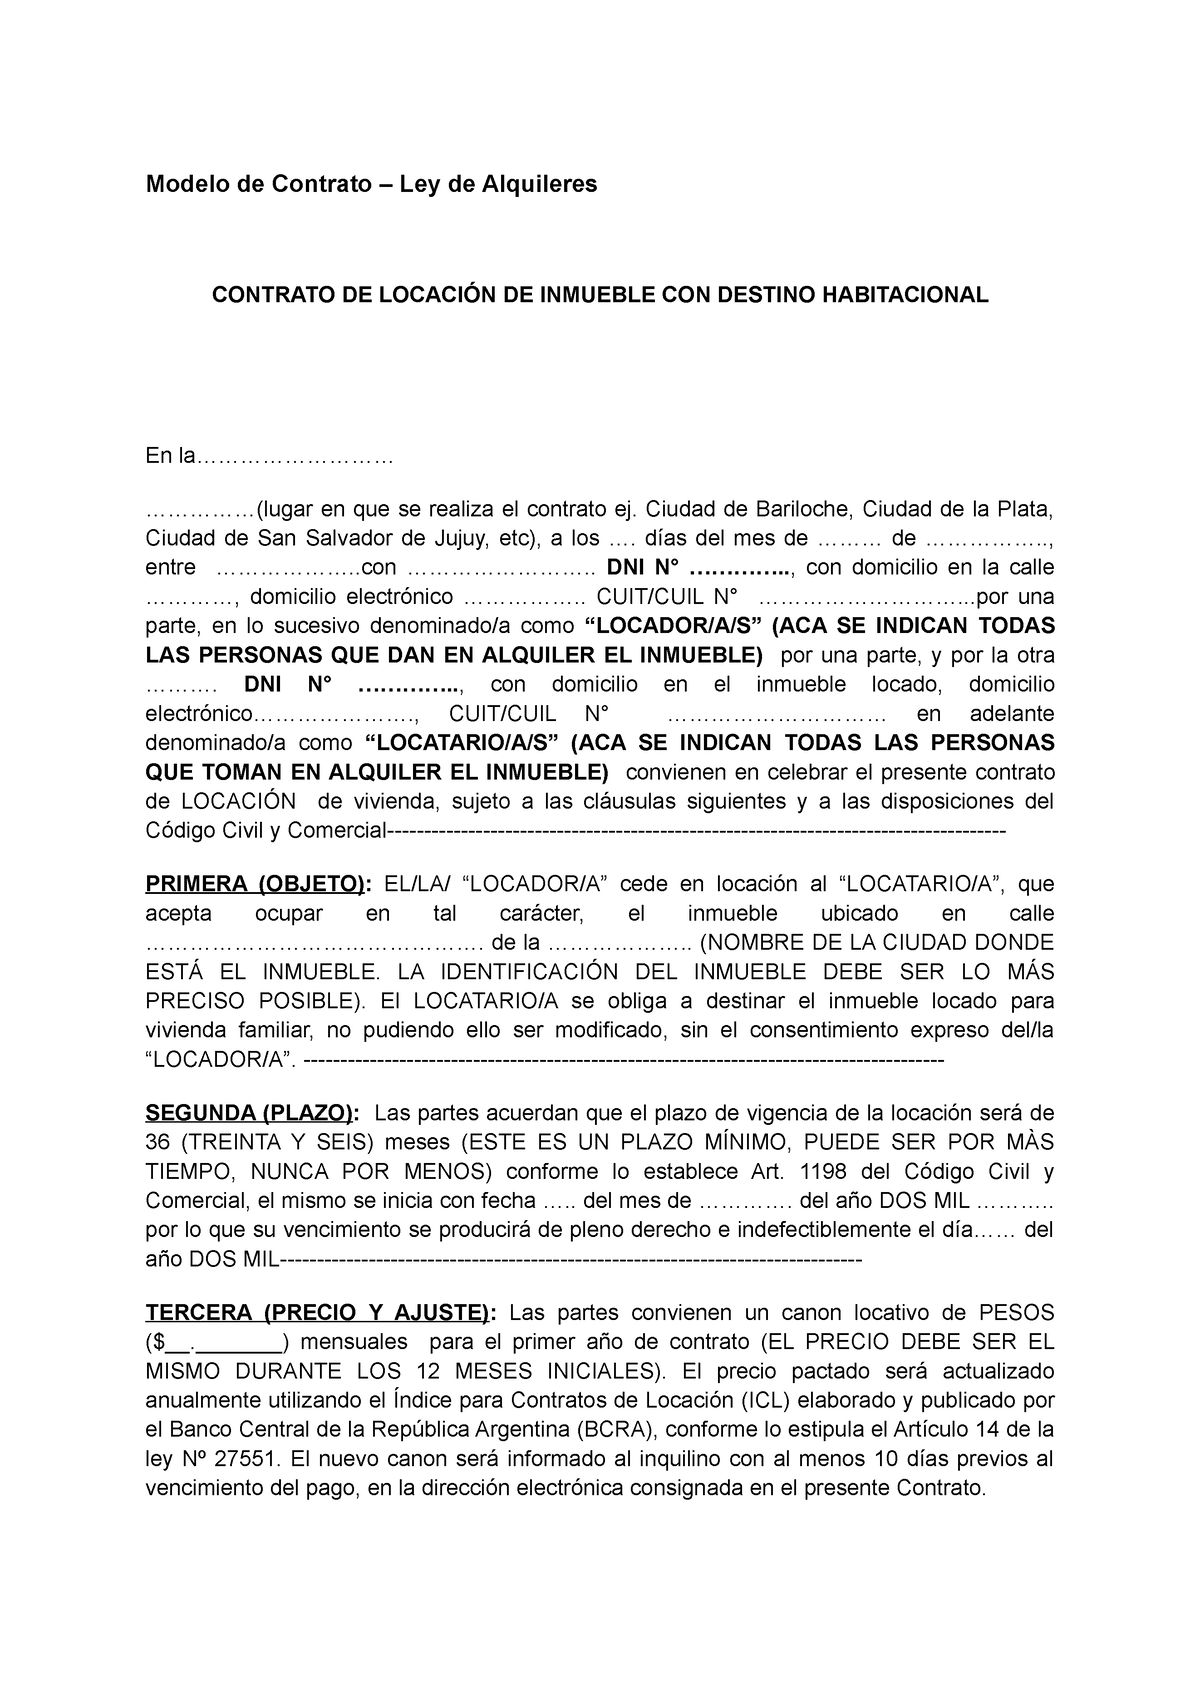 Modelo De Contrato De Locacion Modelo De Contrato Ley De Alquileres Contrato De LocaciÓn De 4113